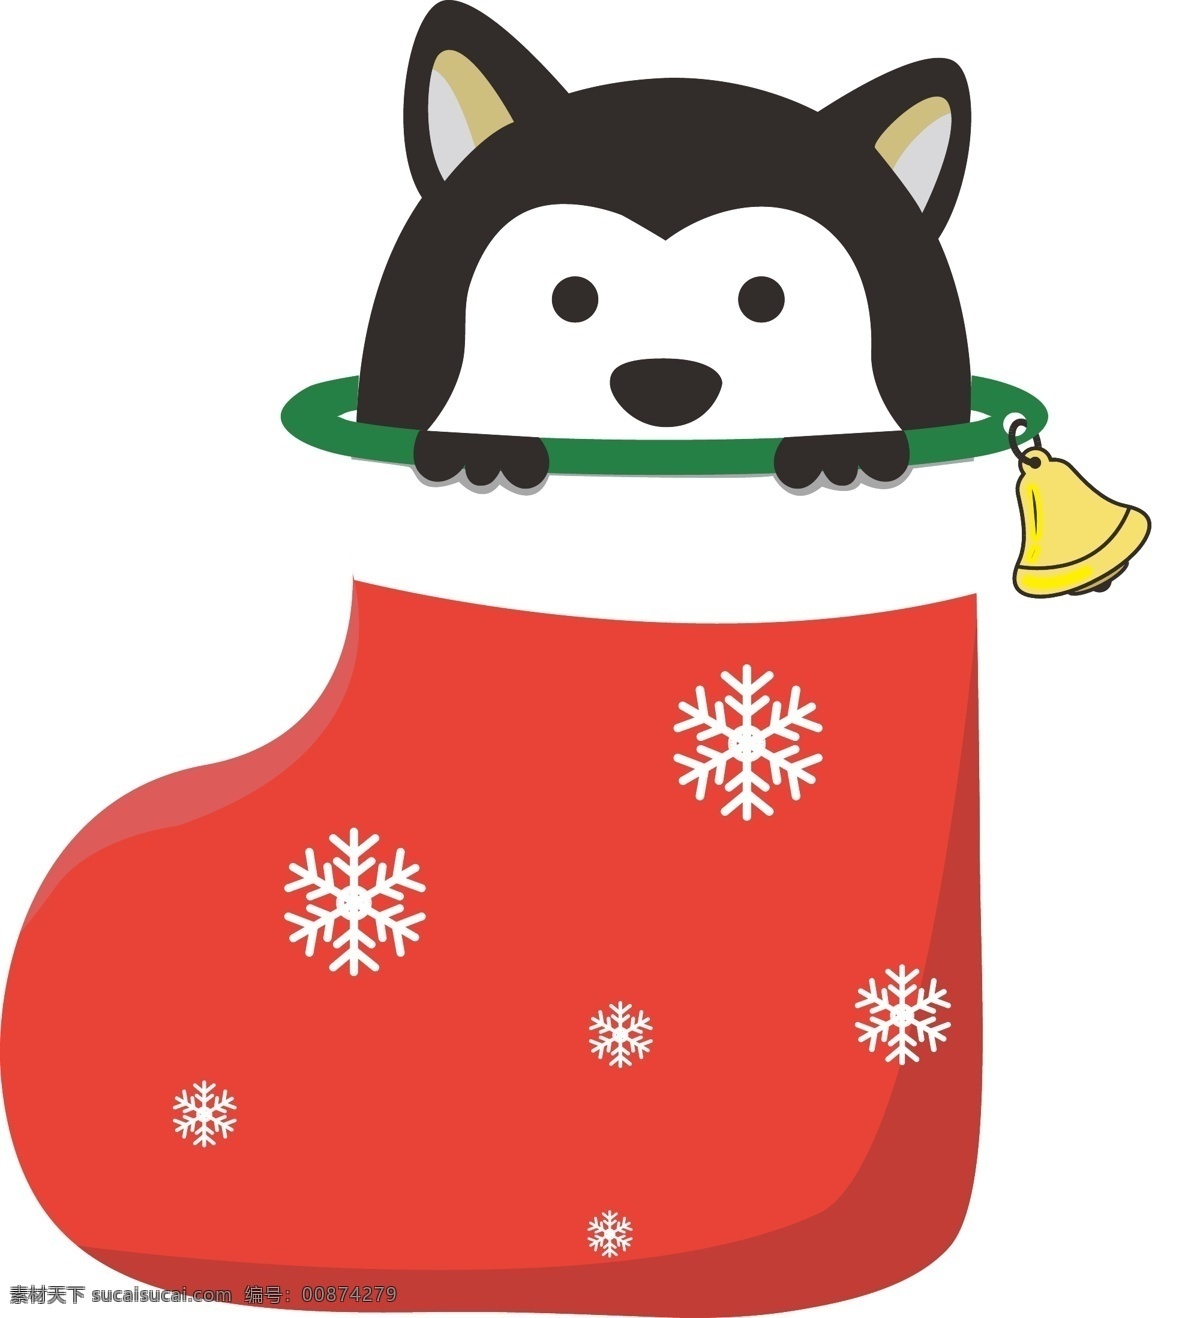 圣诞节 狗 袜 礼物 主题 圣诞狗 圣诞礼物 铃铛 圣诞袜 可爱狗狗 雪花